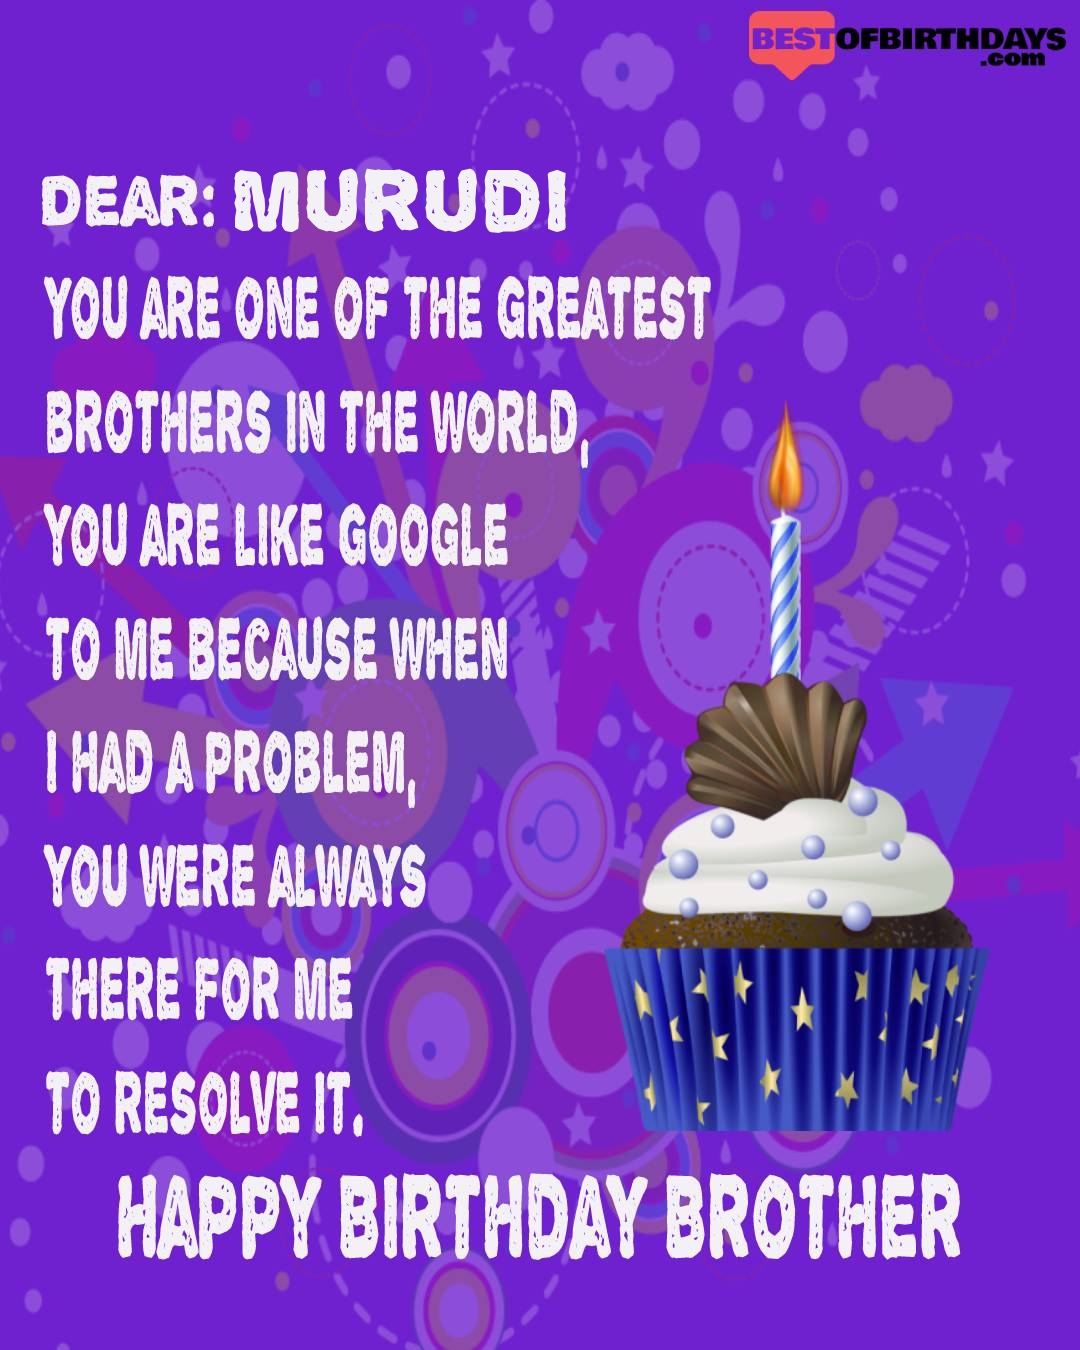 Happy birthday murudi bhai brother bro